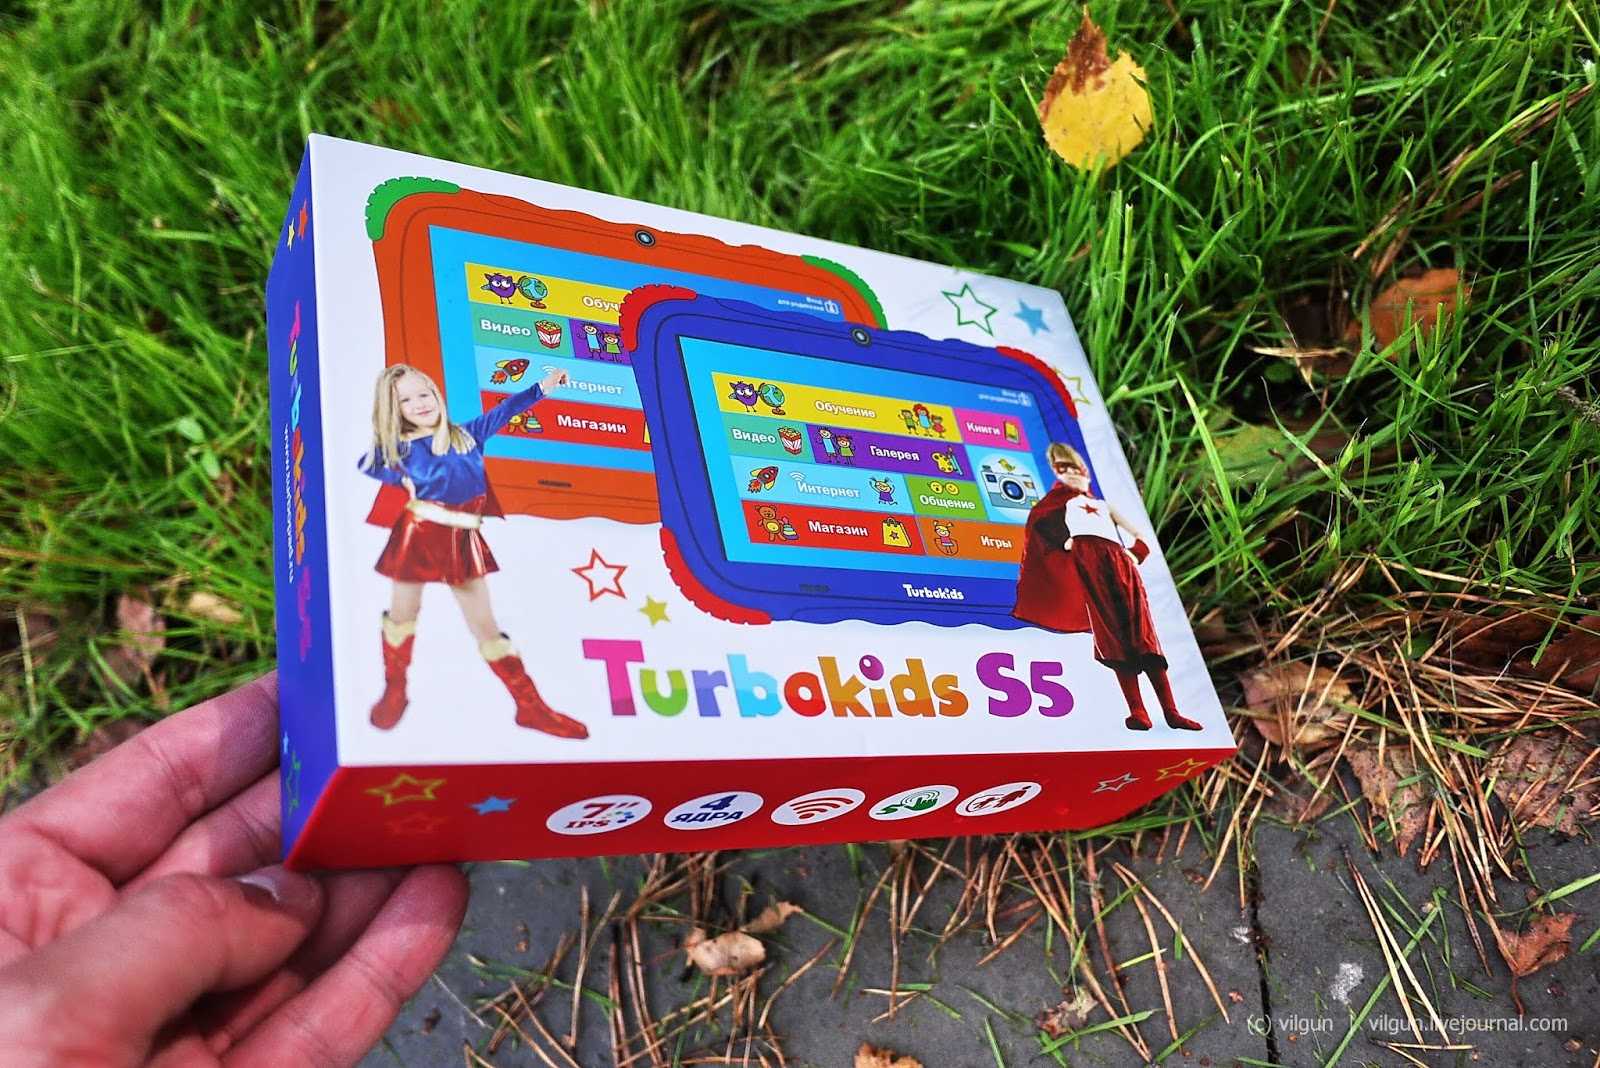 Обзор лучших детских развивающих и для рисования планшетов; недорогие игровые, обучающие модели для детей от 2 ... 5 лет азбукварик, turbokids princess new, joy toy